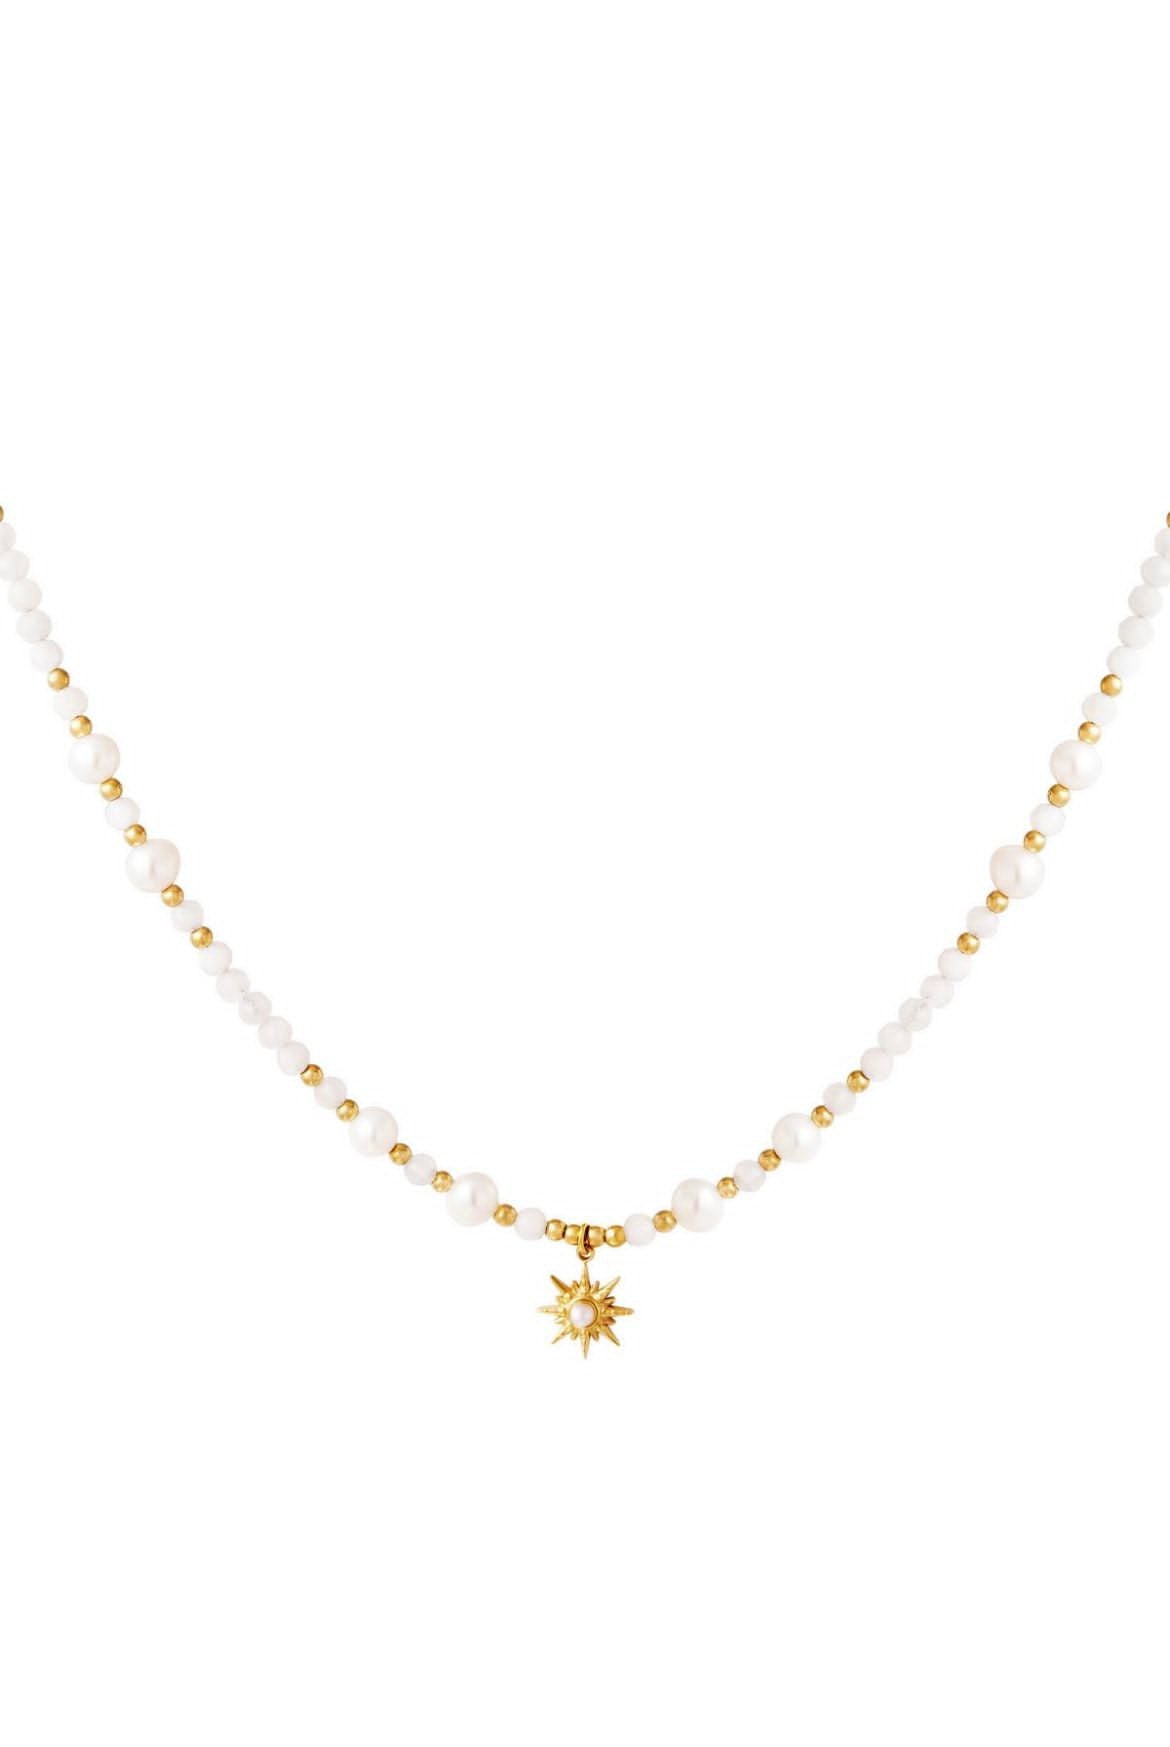 Starshine Necklace